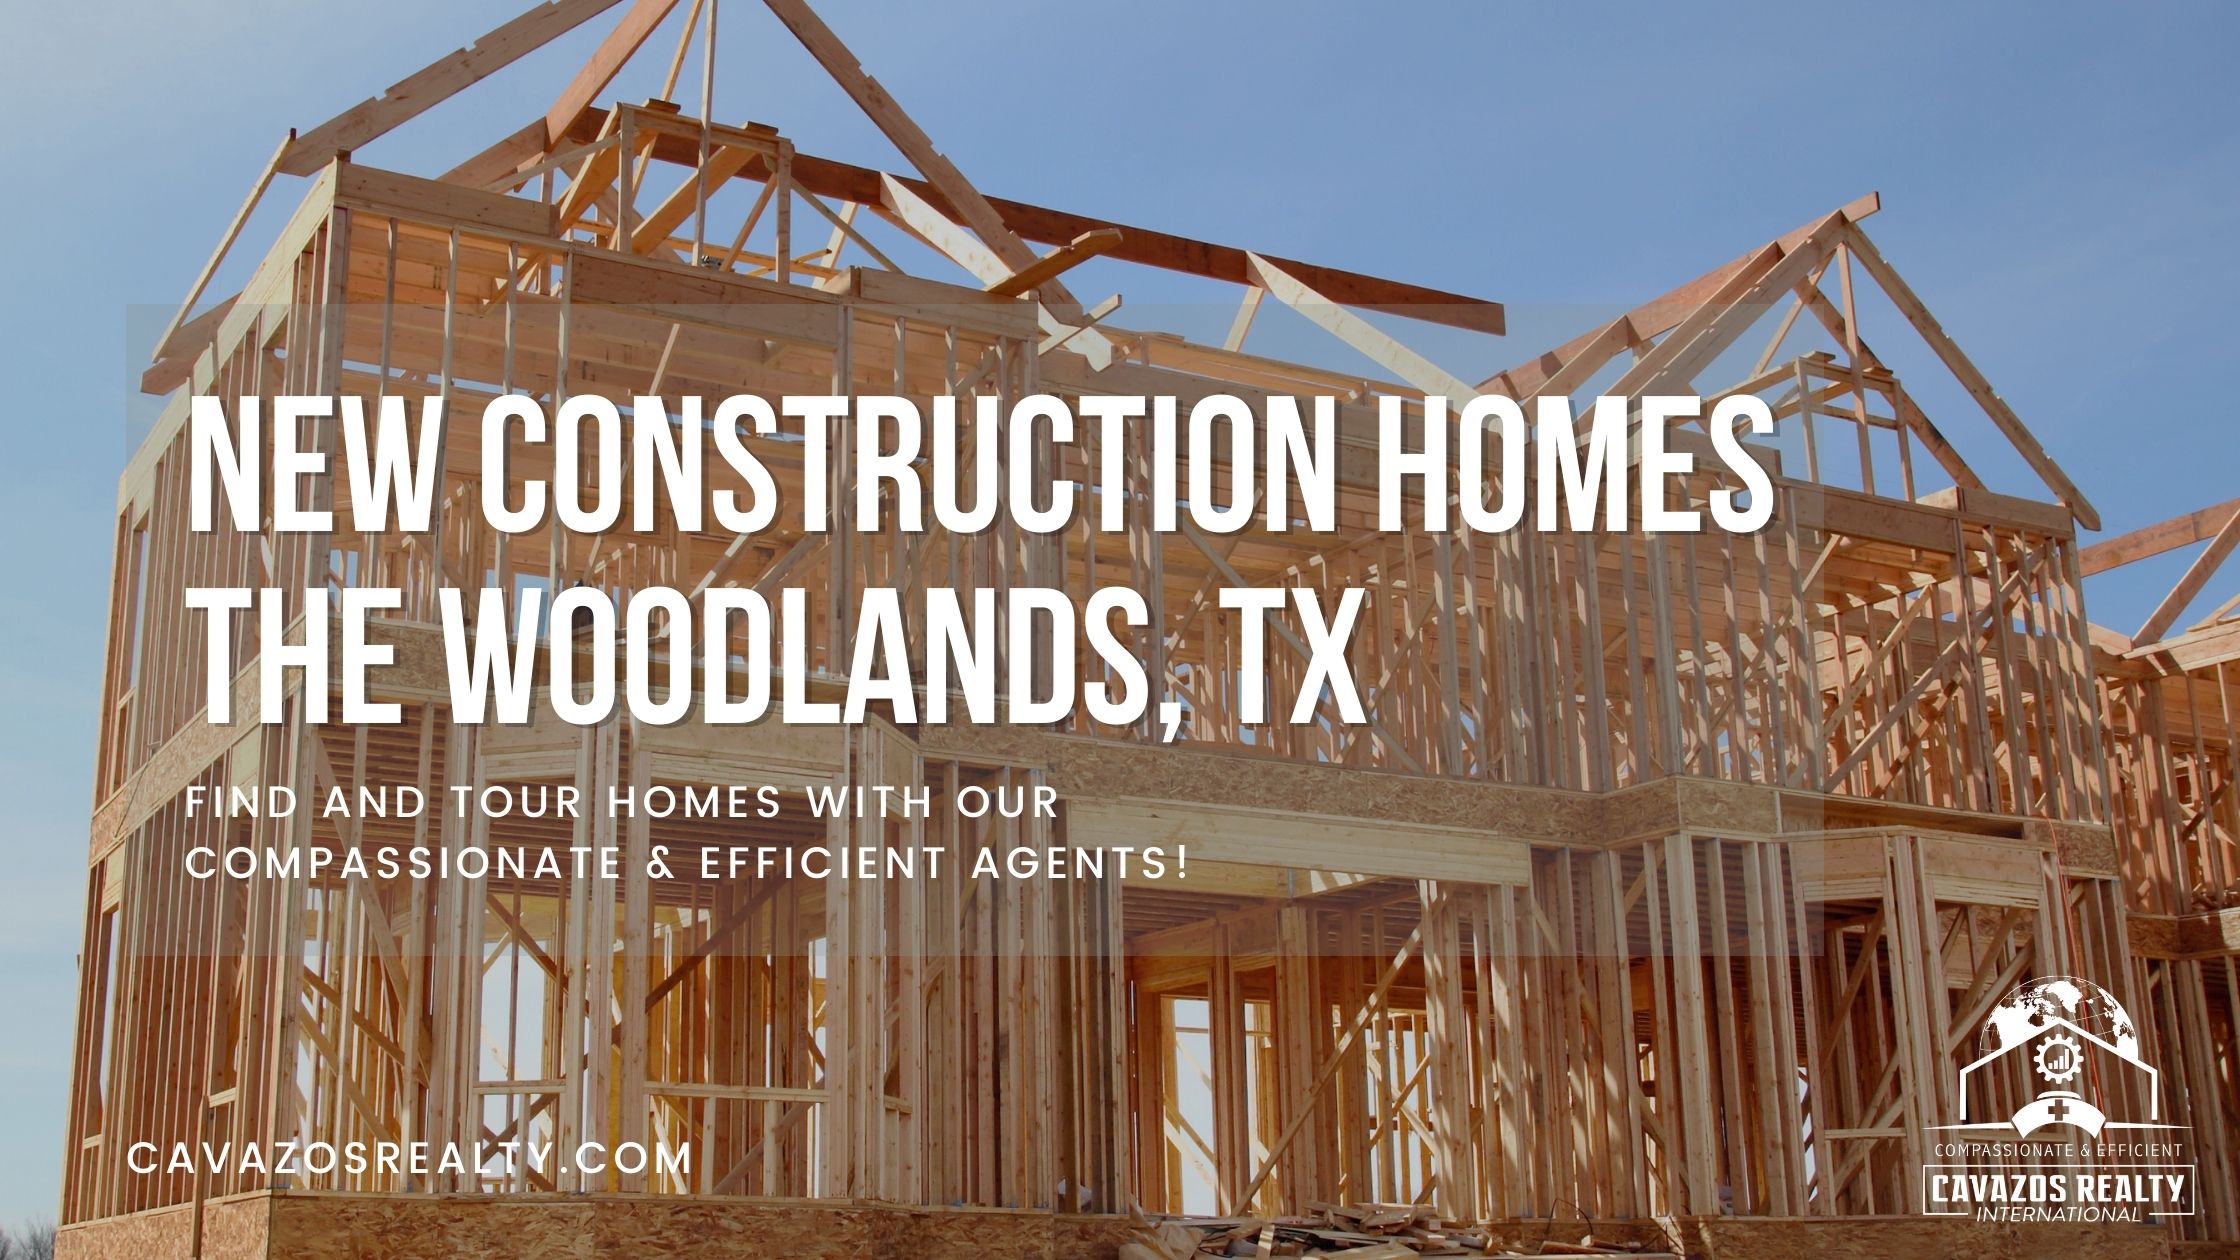 Casas de nueva construcción a la venta en The Woodlands, TX | Inmobiliaria  Cavazos